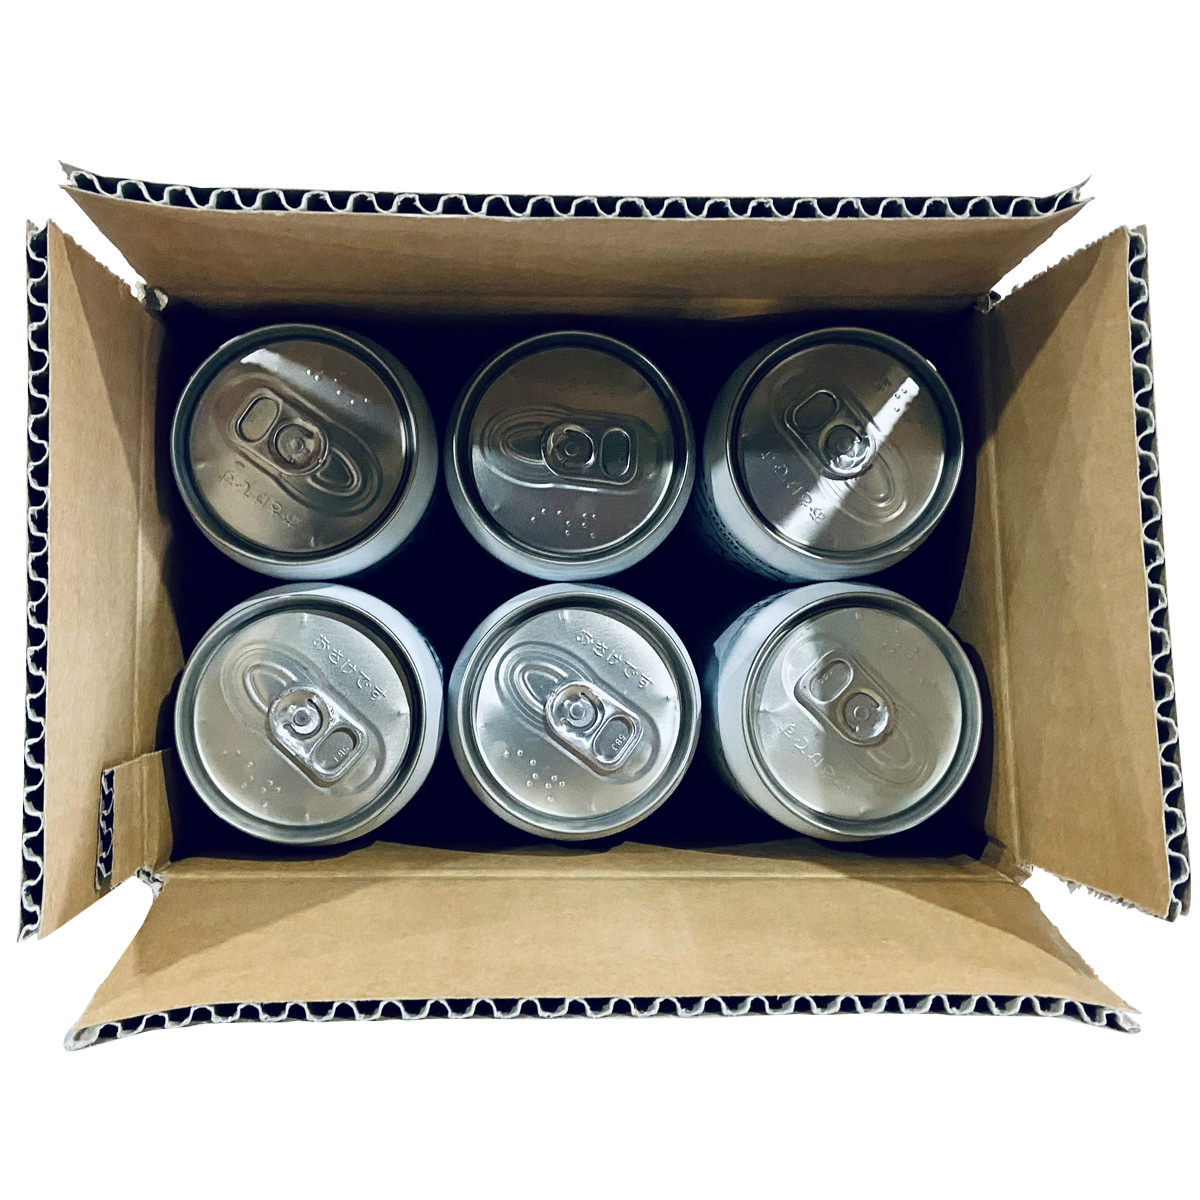 月と太陽BREWING Pilsner 6缶セット ビール 北海道 クラフトビール 国産 お酒 アルコール 缶ビール 詰め合わせ ご当地ビール 3